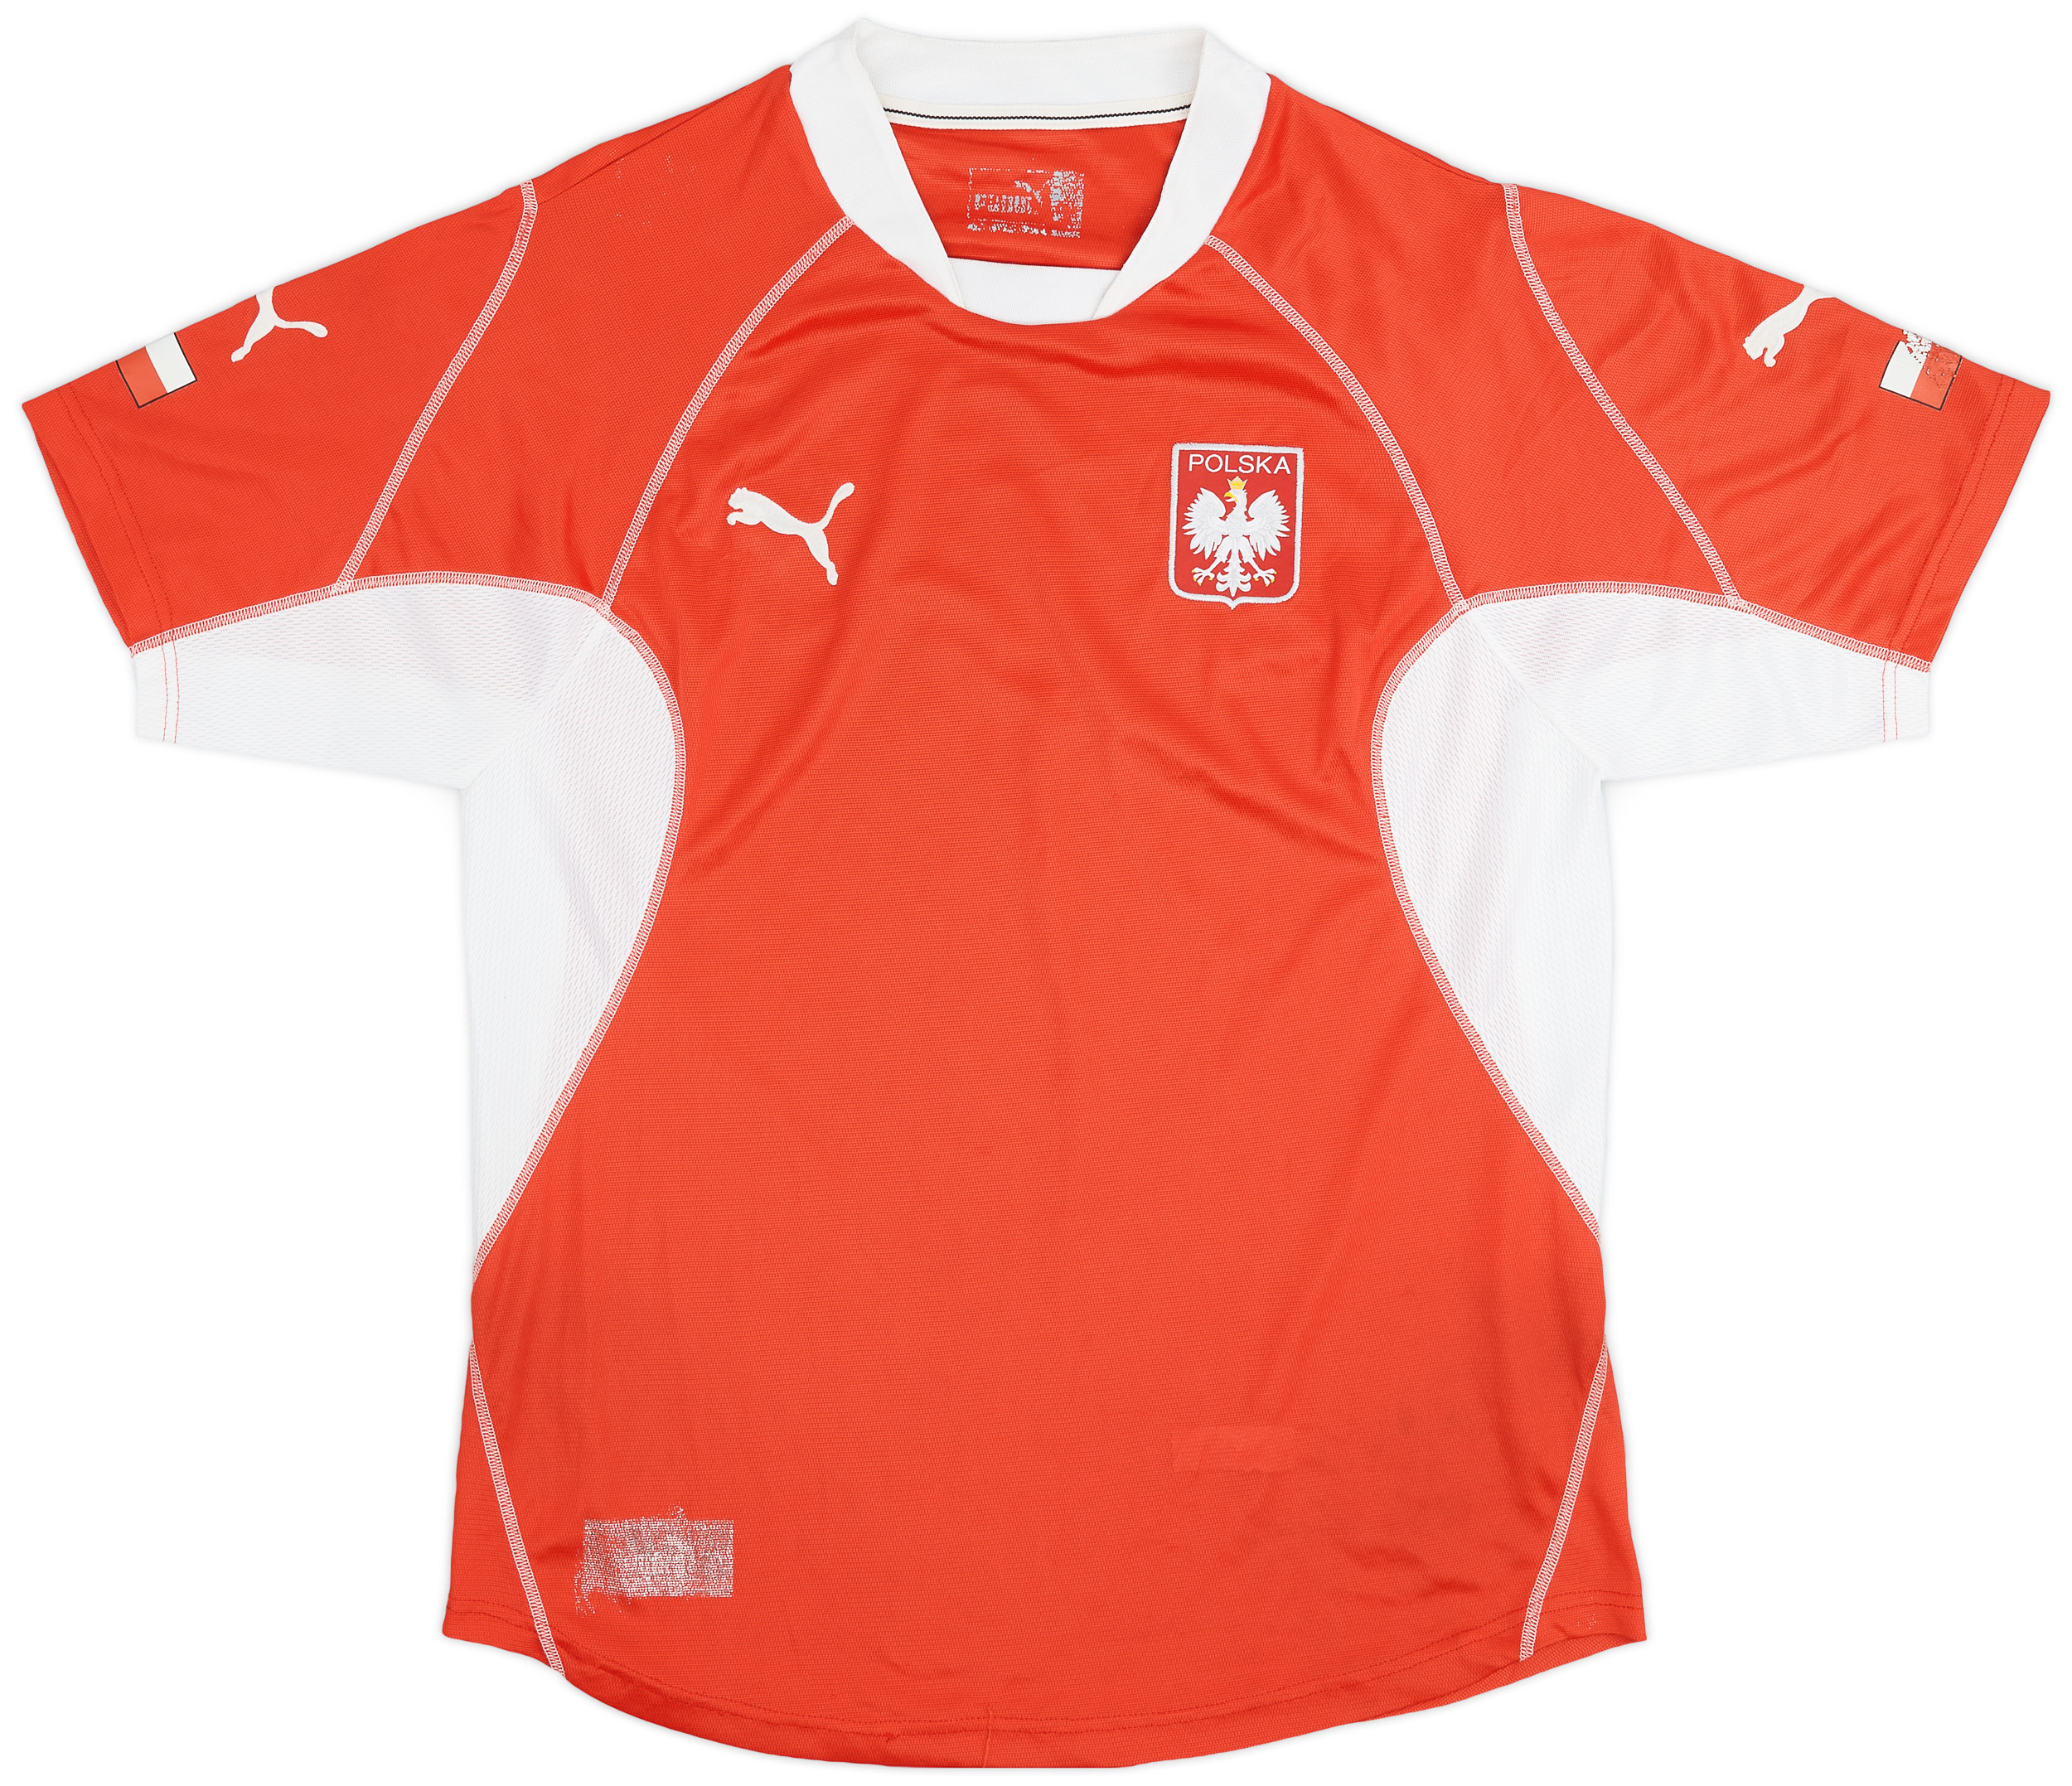 2002-04 Poland Away Shirt - 8/10 - ()